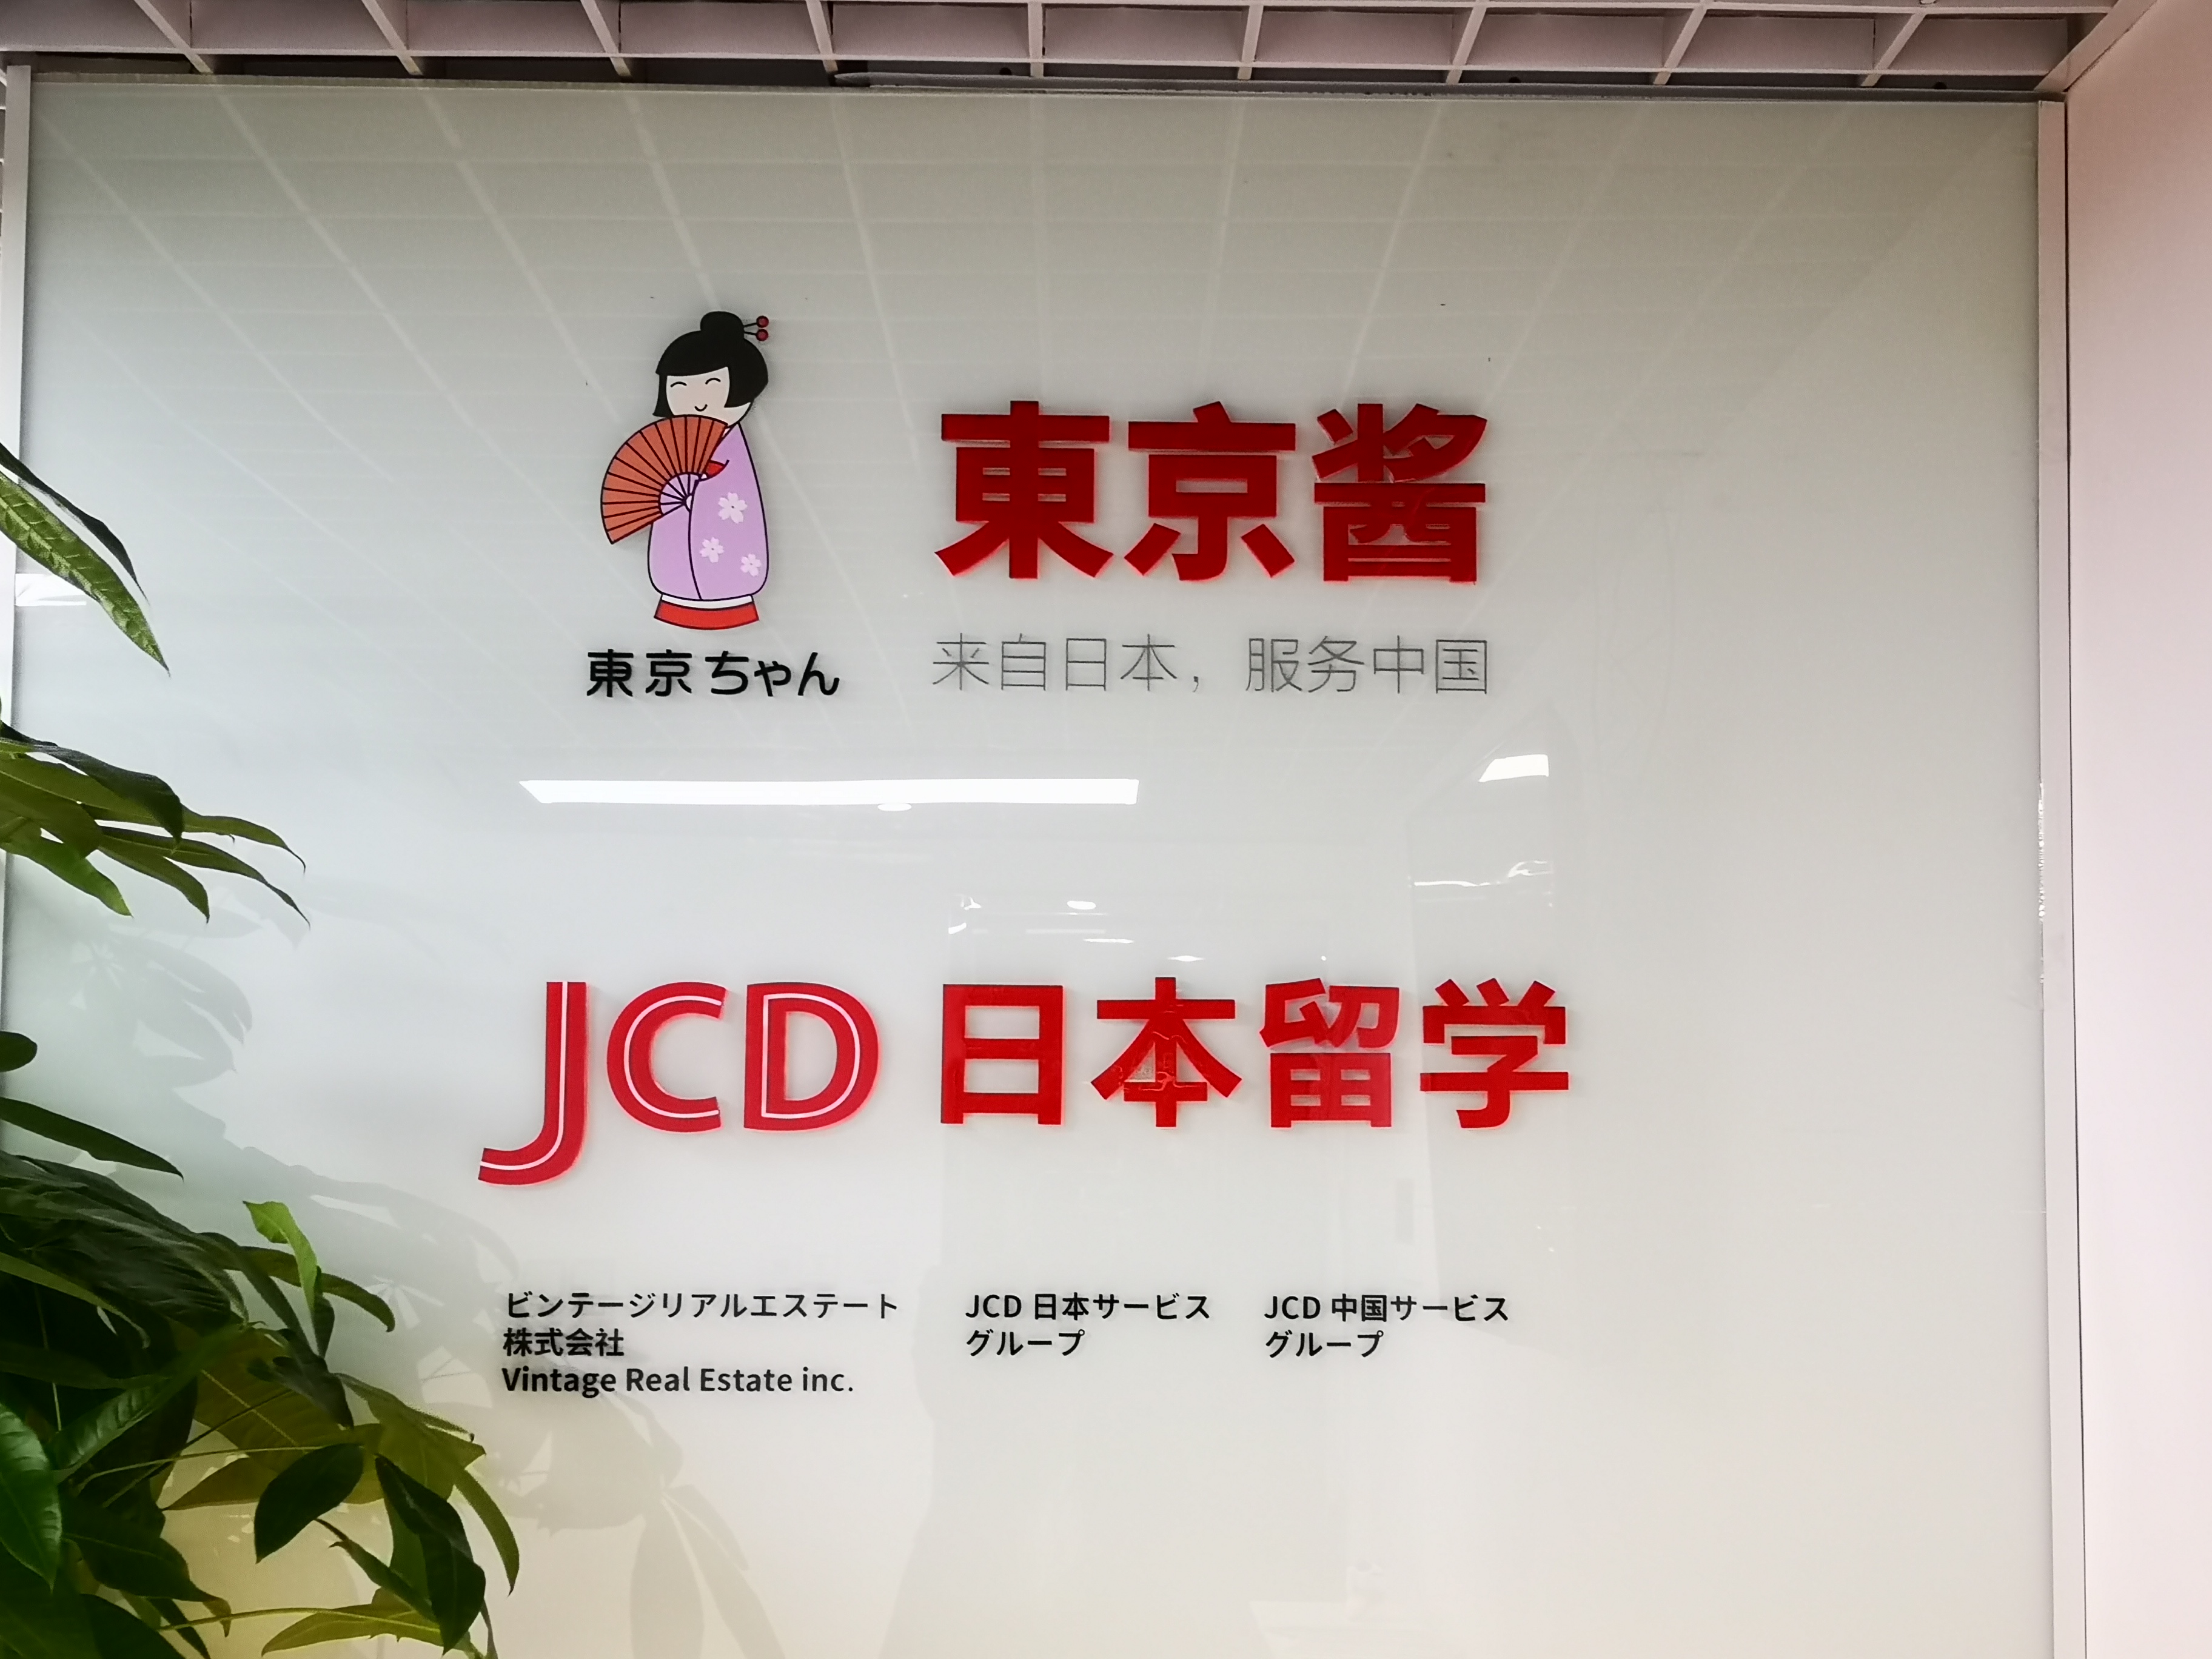 上海JCD杰斯蒂日本留学静安校区